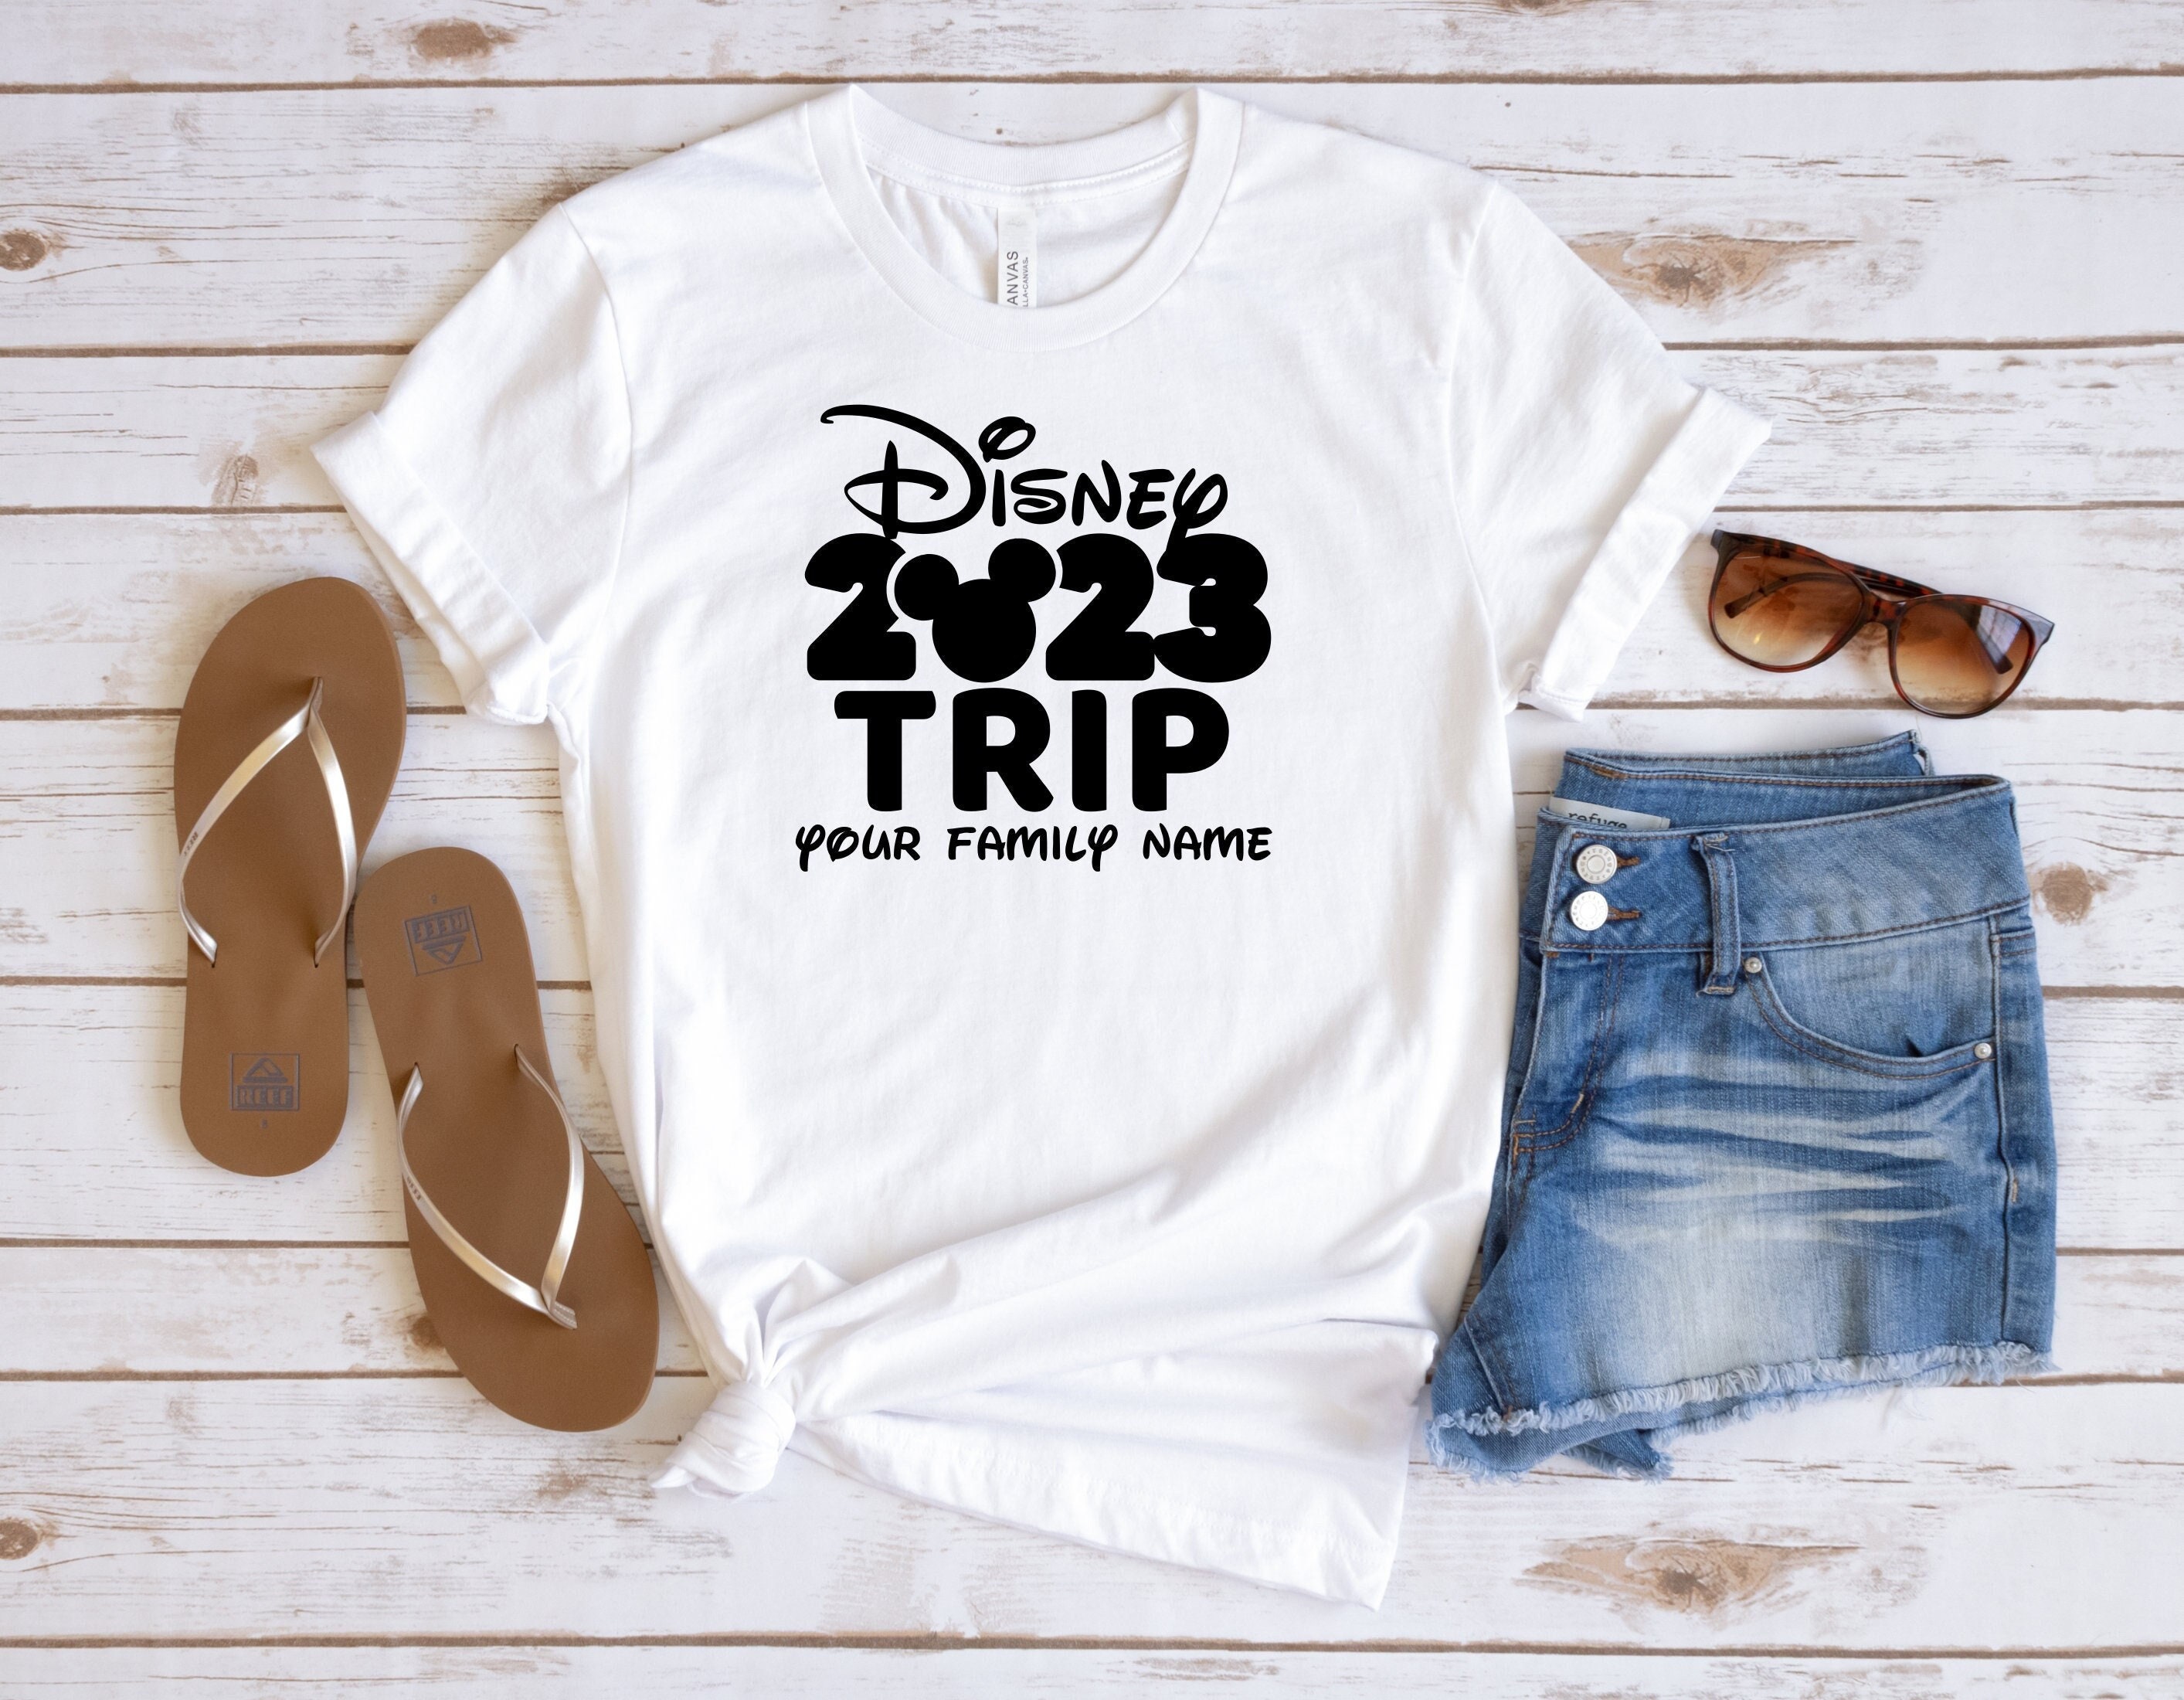 Discover Disney 2023 Trip Shirt, Custom Disney 2023 Family Trip Shirt, Family Trip 2023 Shirt